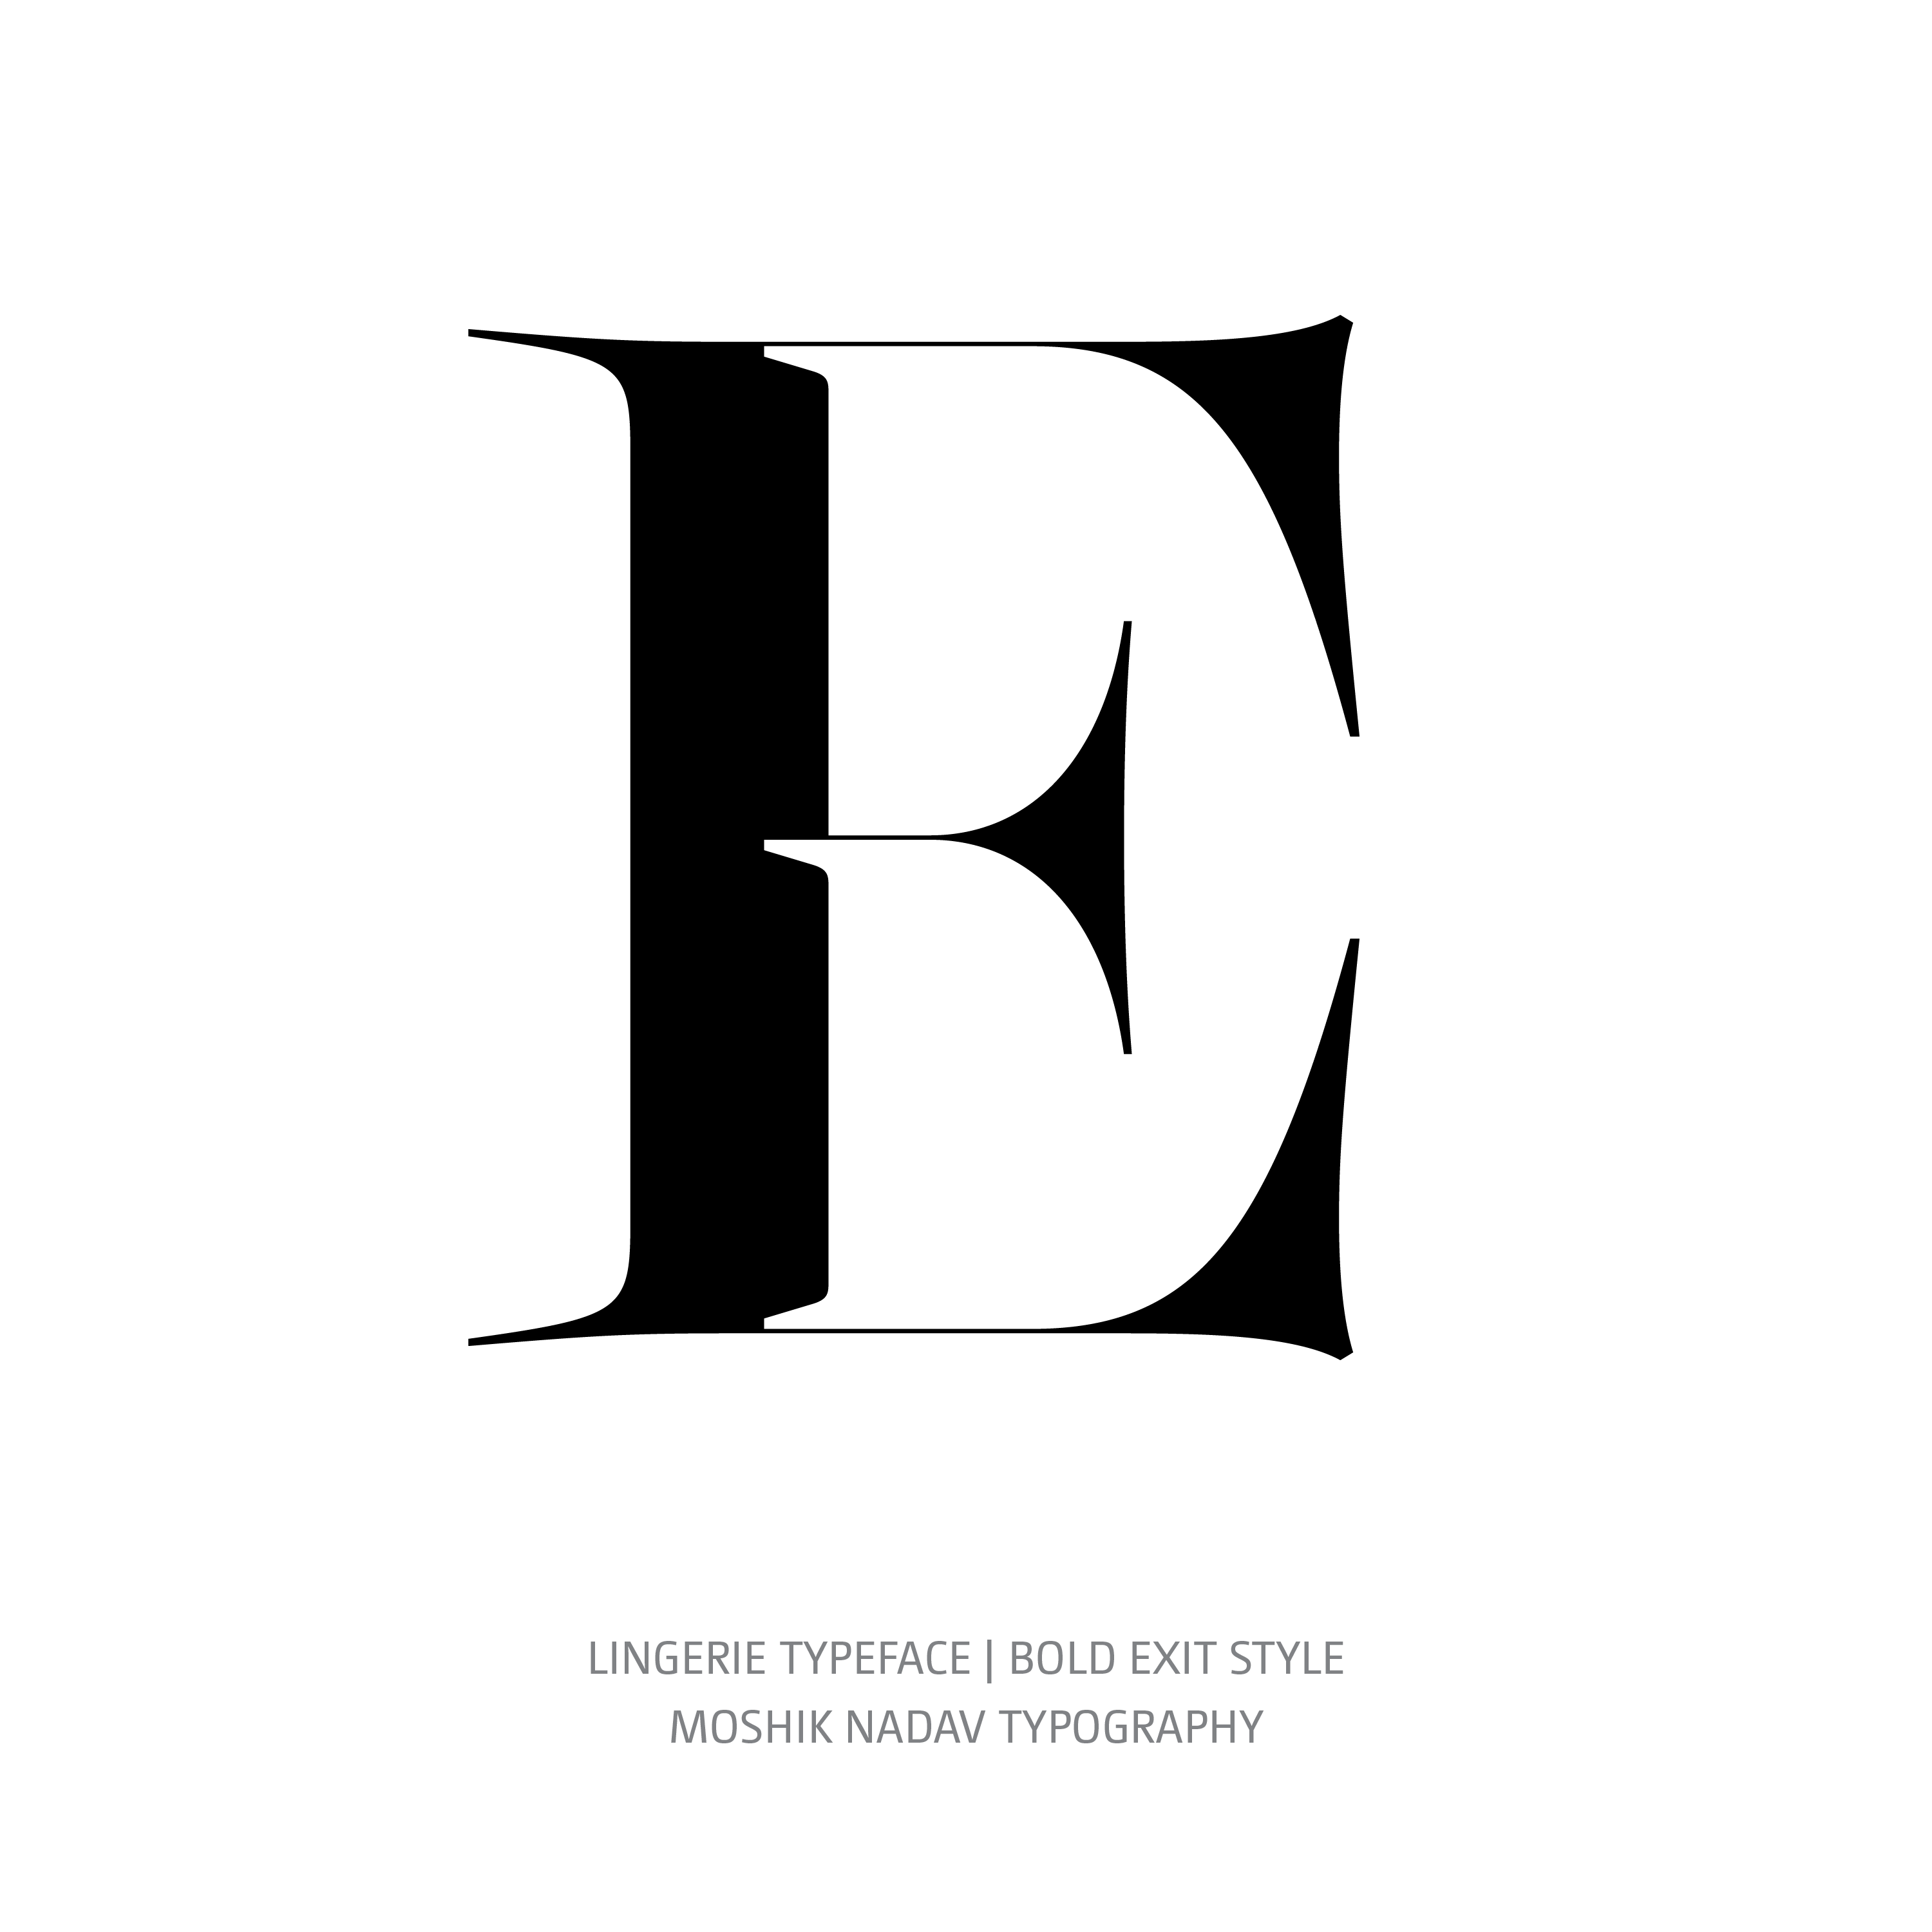 Lingerie Typeface Bold Exit E